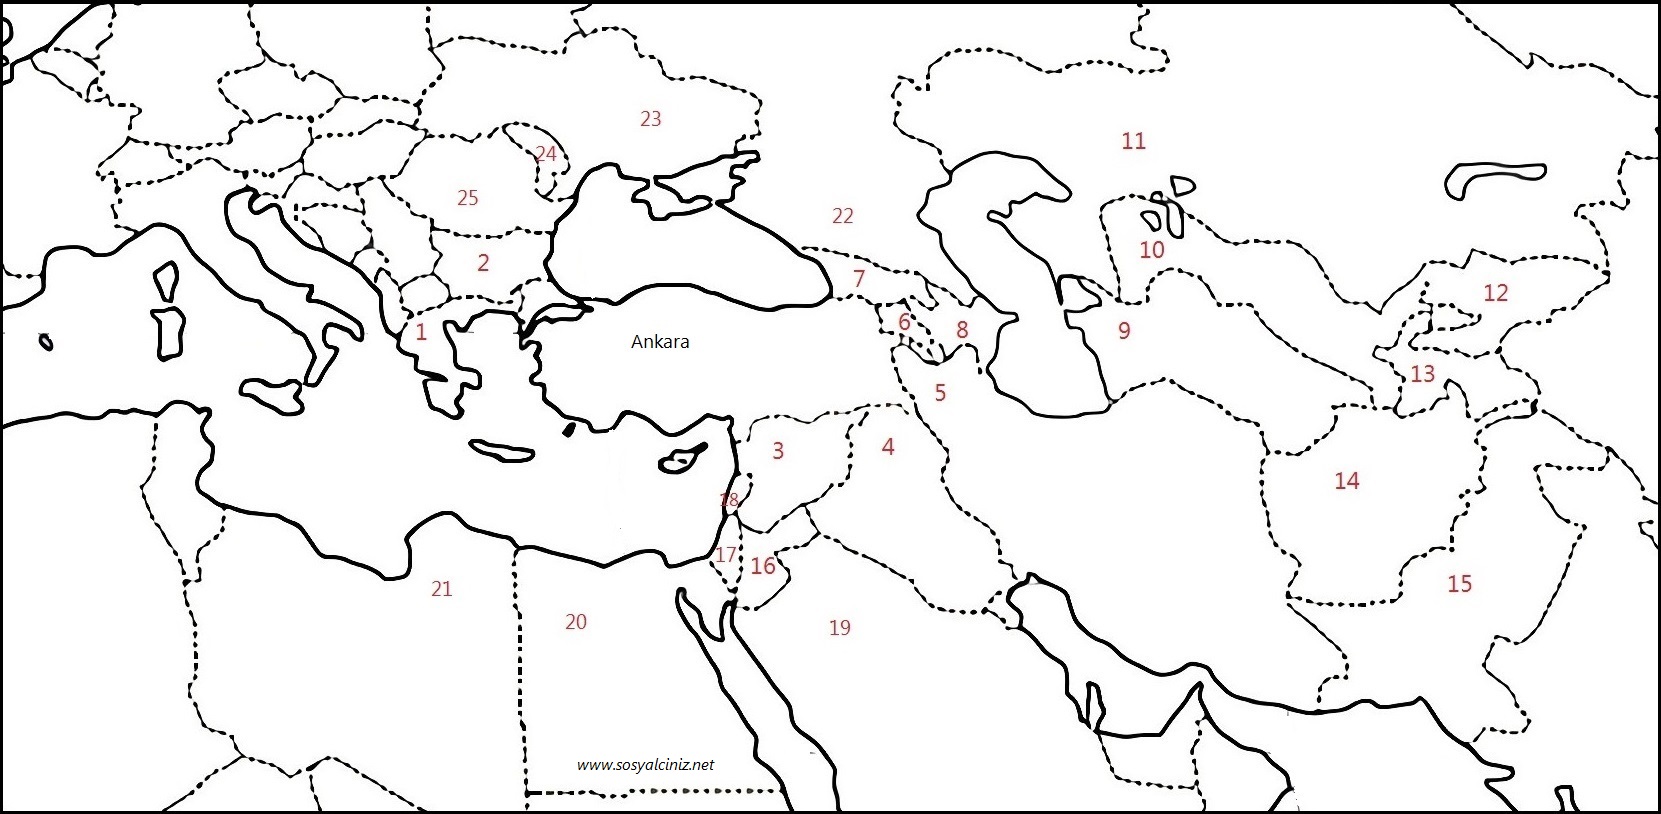 Yapmak plastik Tamirci harita boyama türkiye Yabancı Unite şöhret